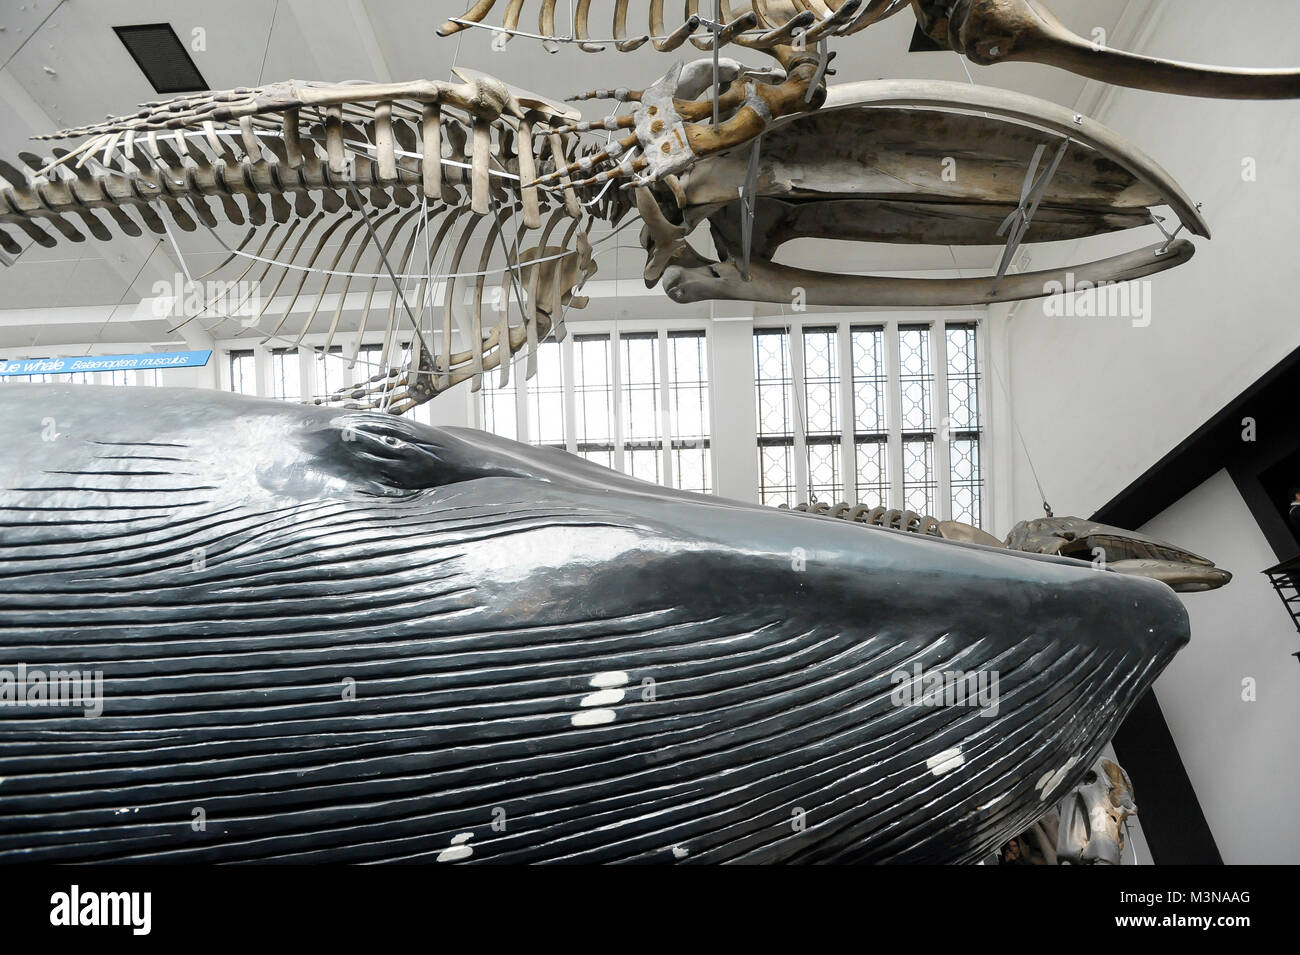 Grandi mammiferi Hall nel Museo di Storia Naturale di Londra, Inghilterra, Regno Unito. 5 aprile 2015 © Wojciech Strozyk / Alamy Stock Photo Foto Stock